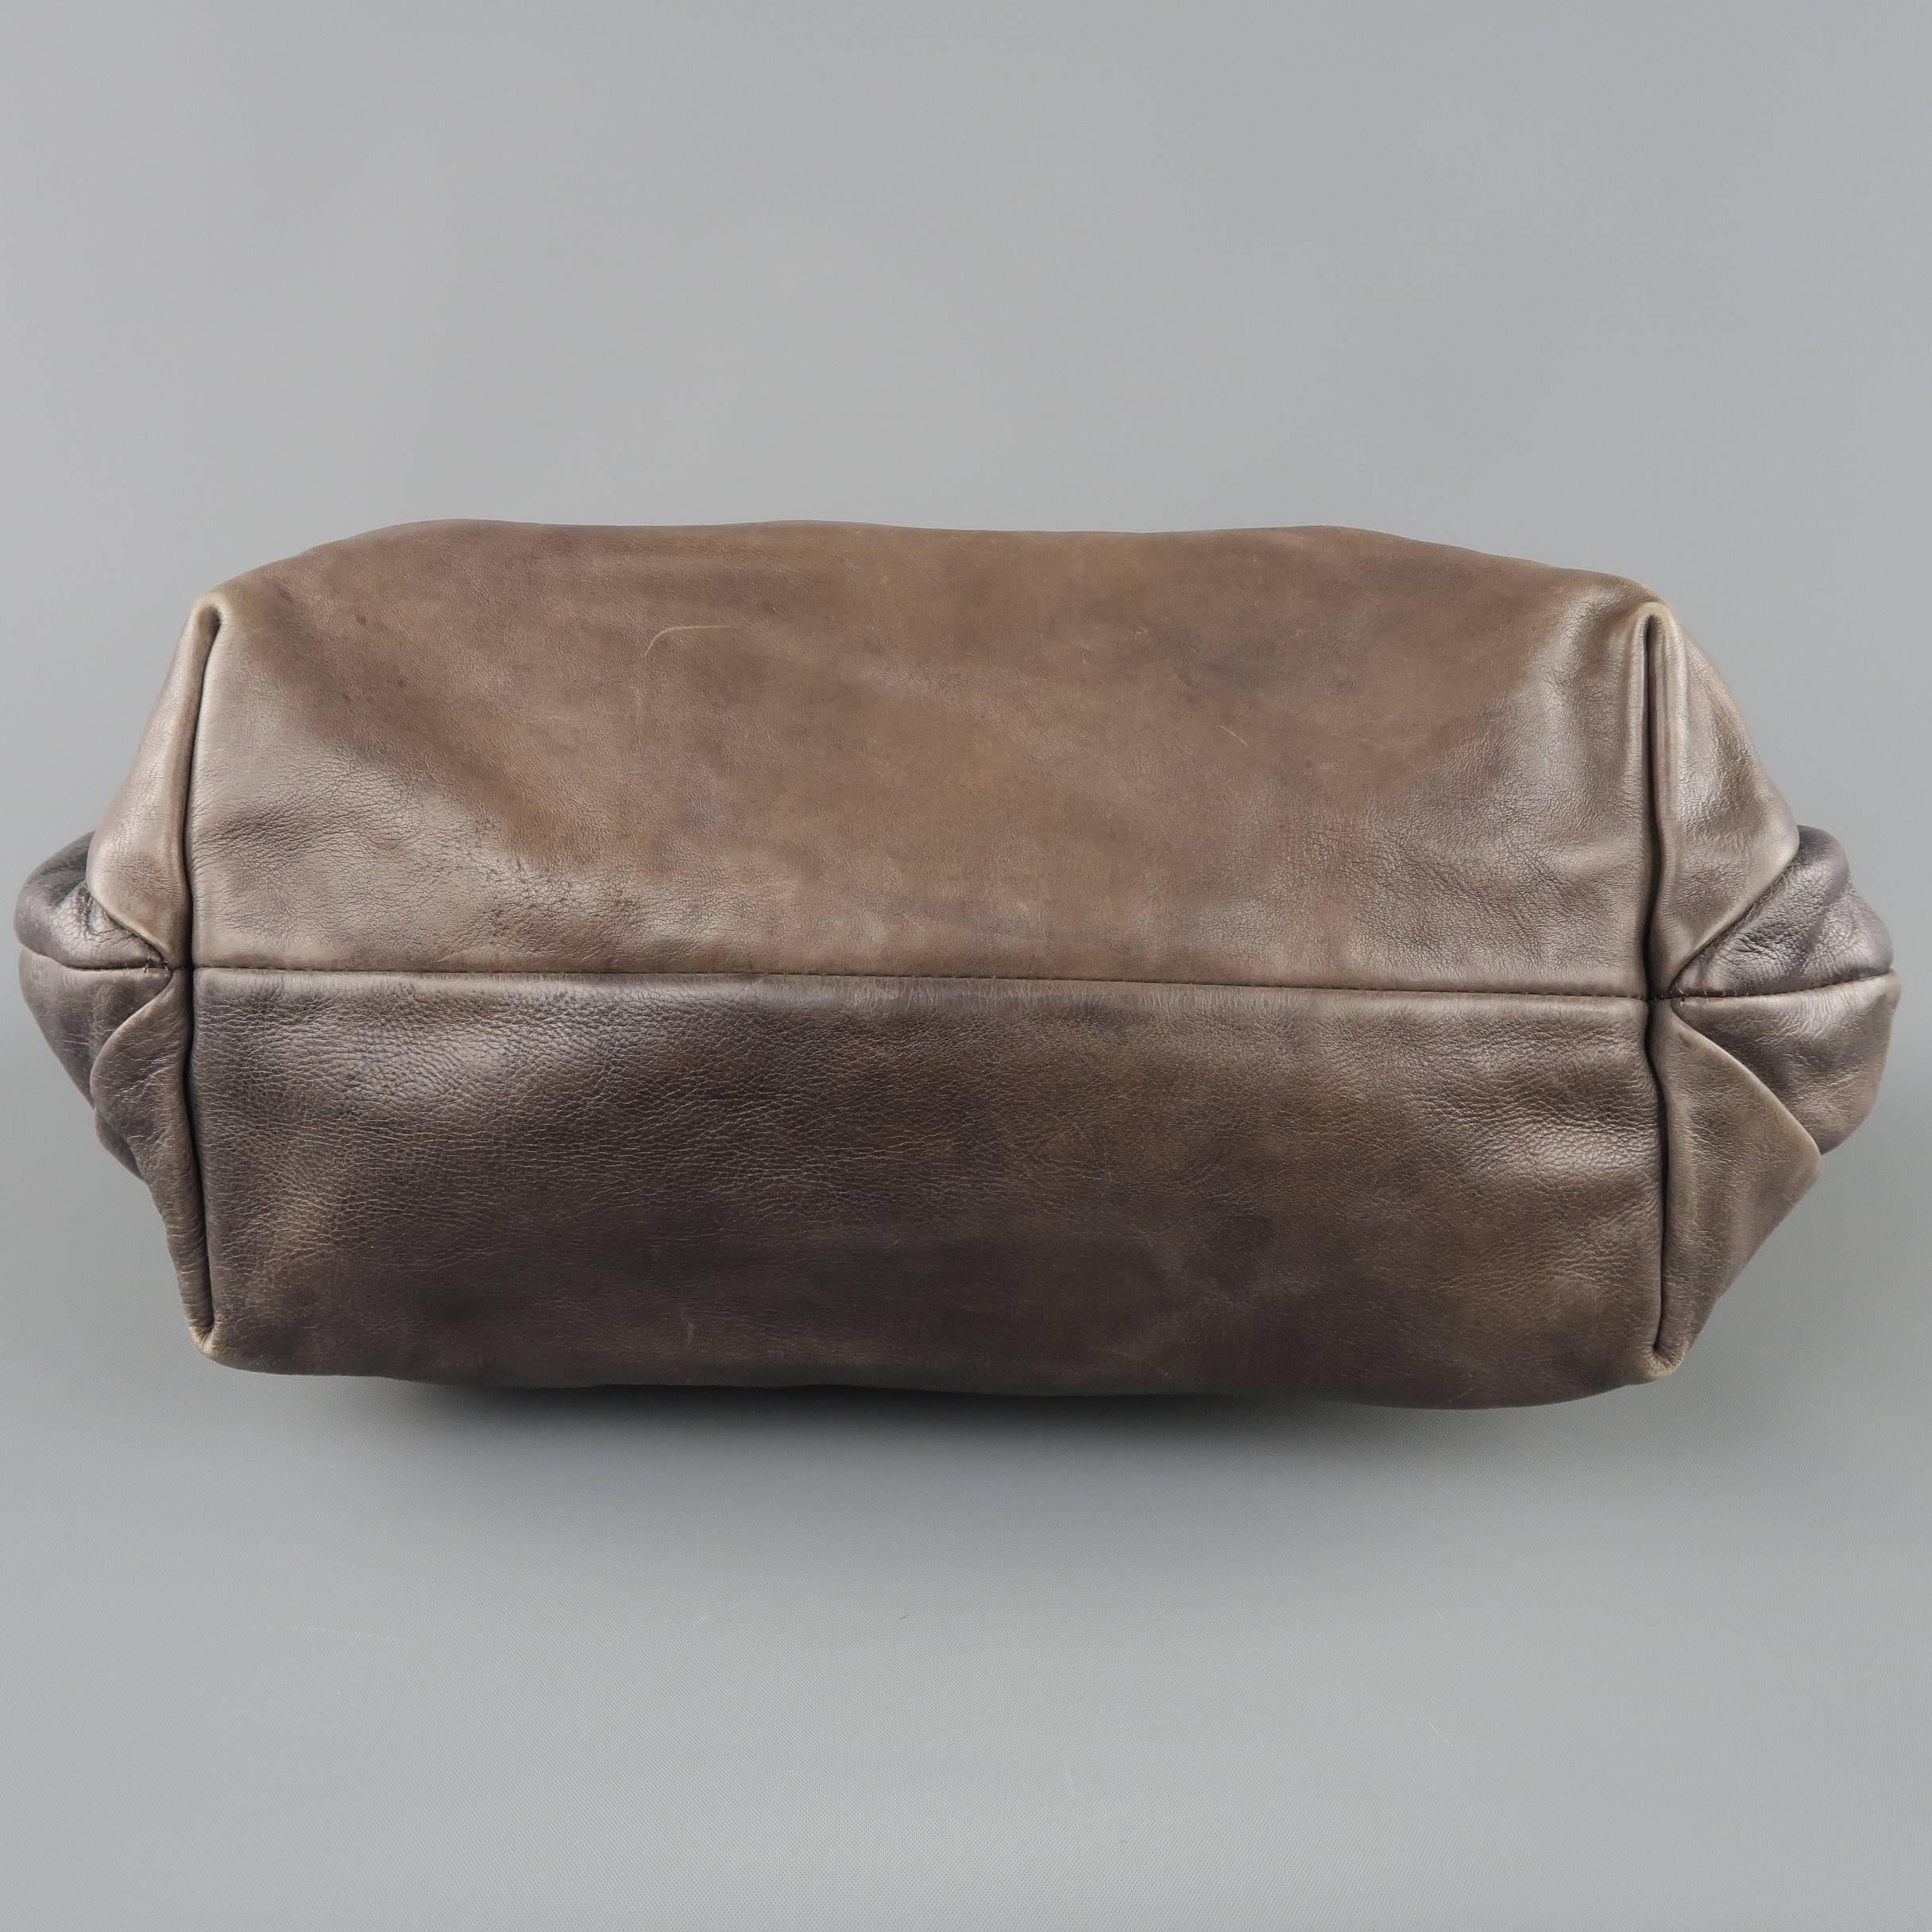 PRADA Taupe Ombre Leather Degrade Blond Mordor Glace Handbag 8